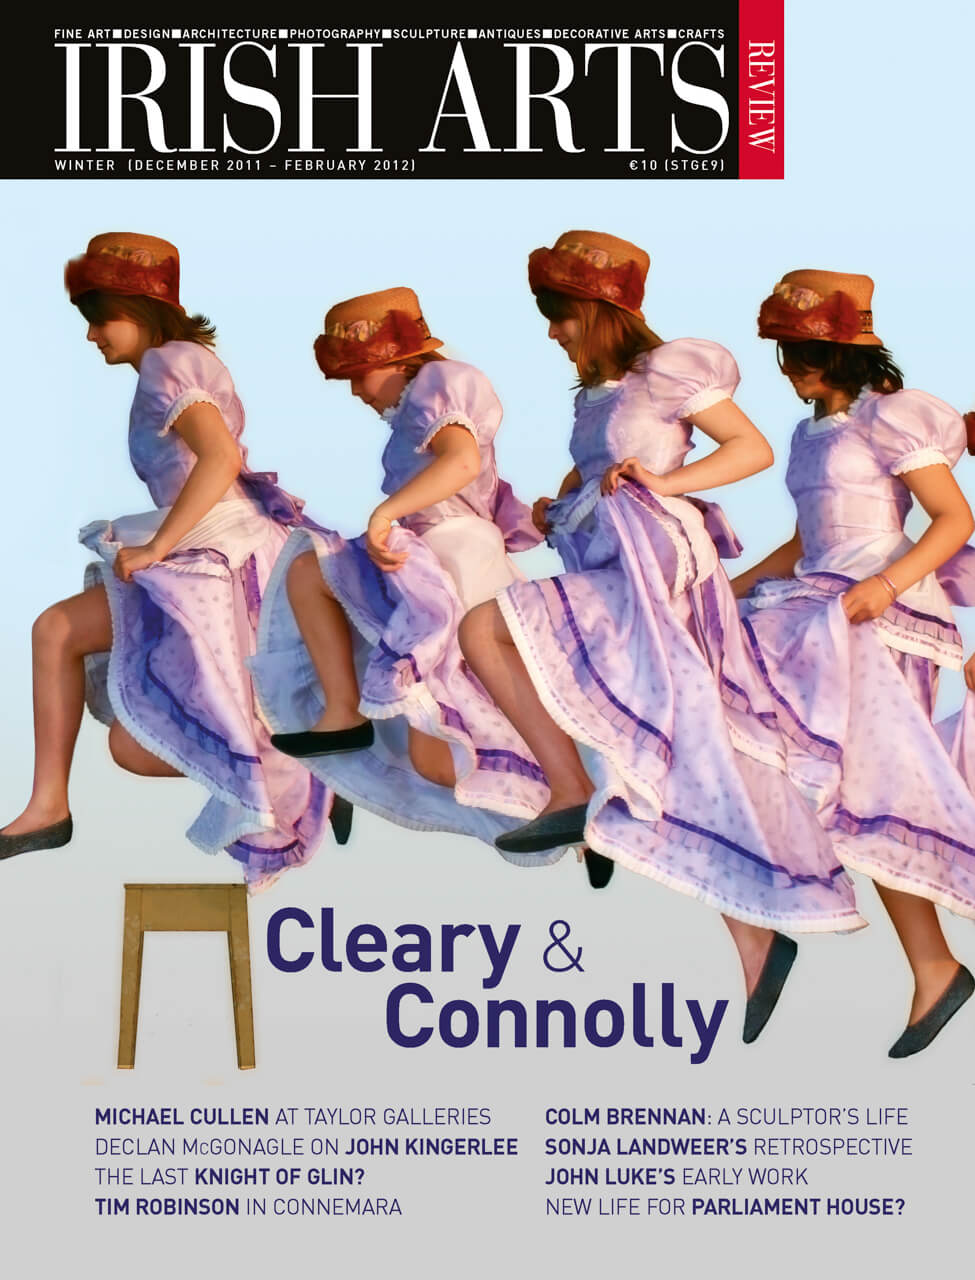 Book Review: DONALD TESKEY: A CONNEMARA FOLIO